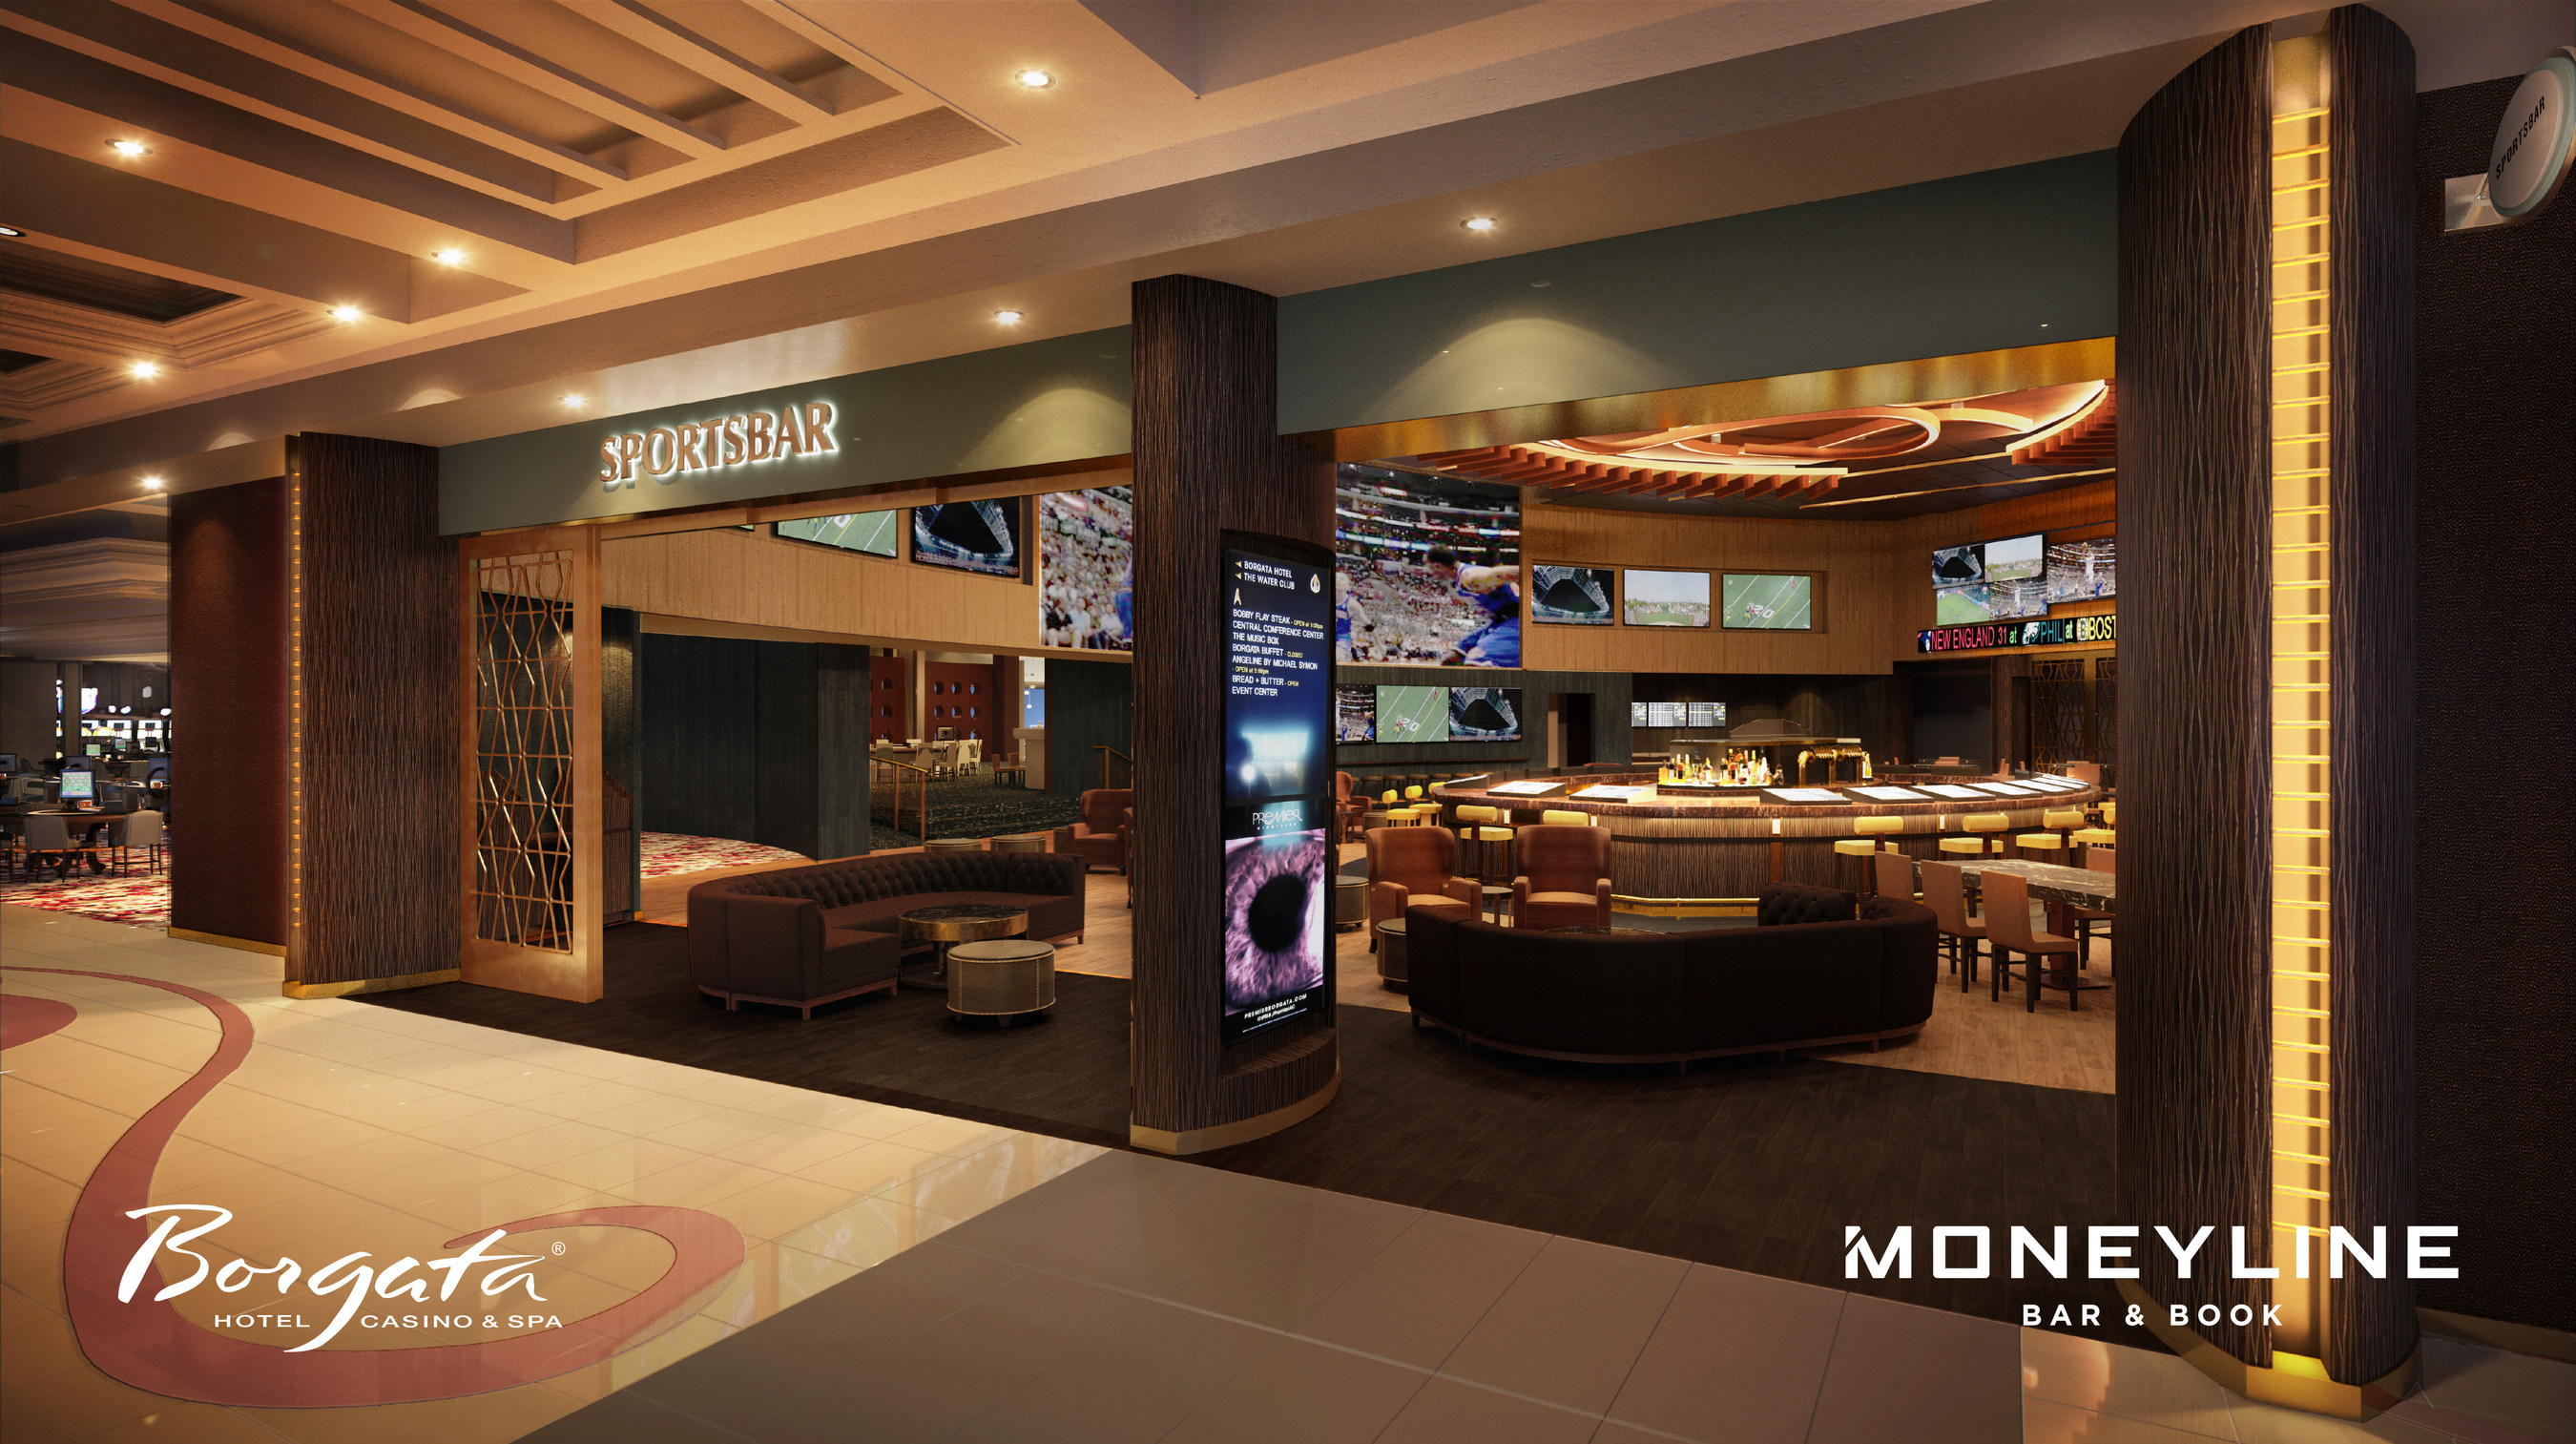 Borgata Hotel Casino Spa Announces Debut Of Moneyline Bar